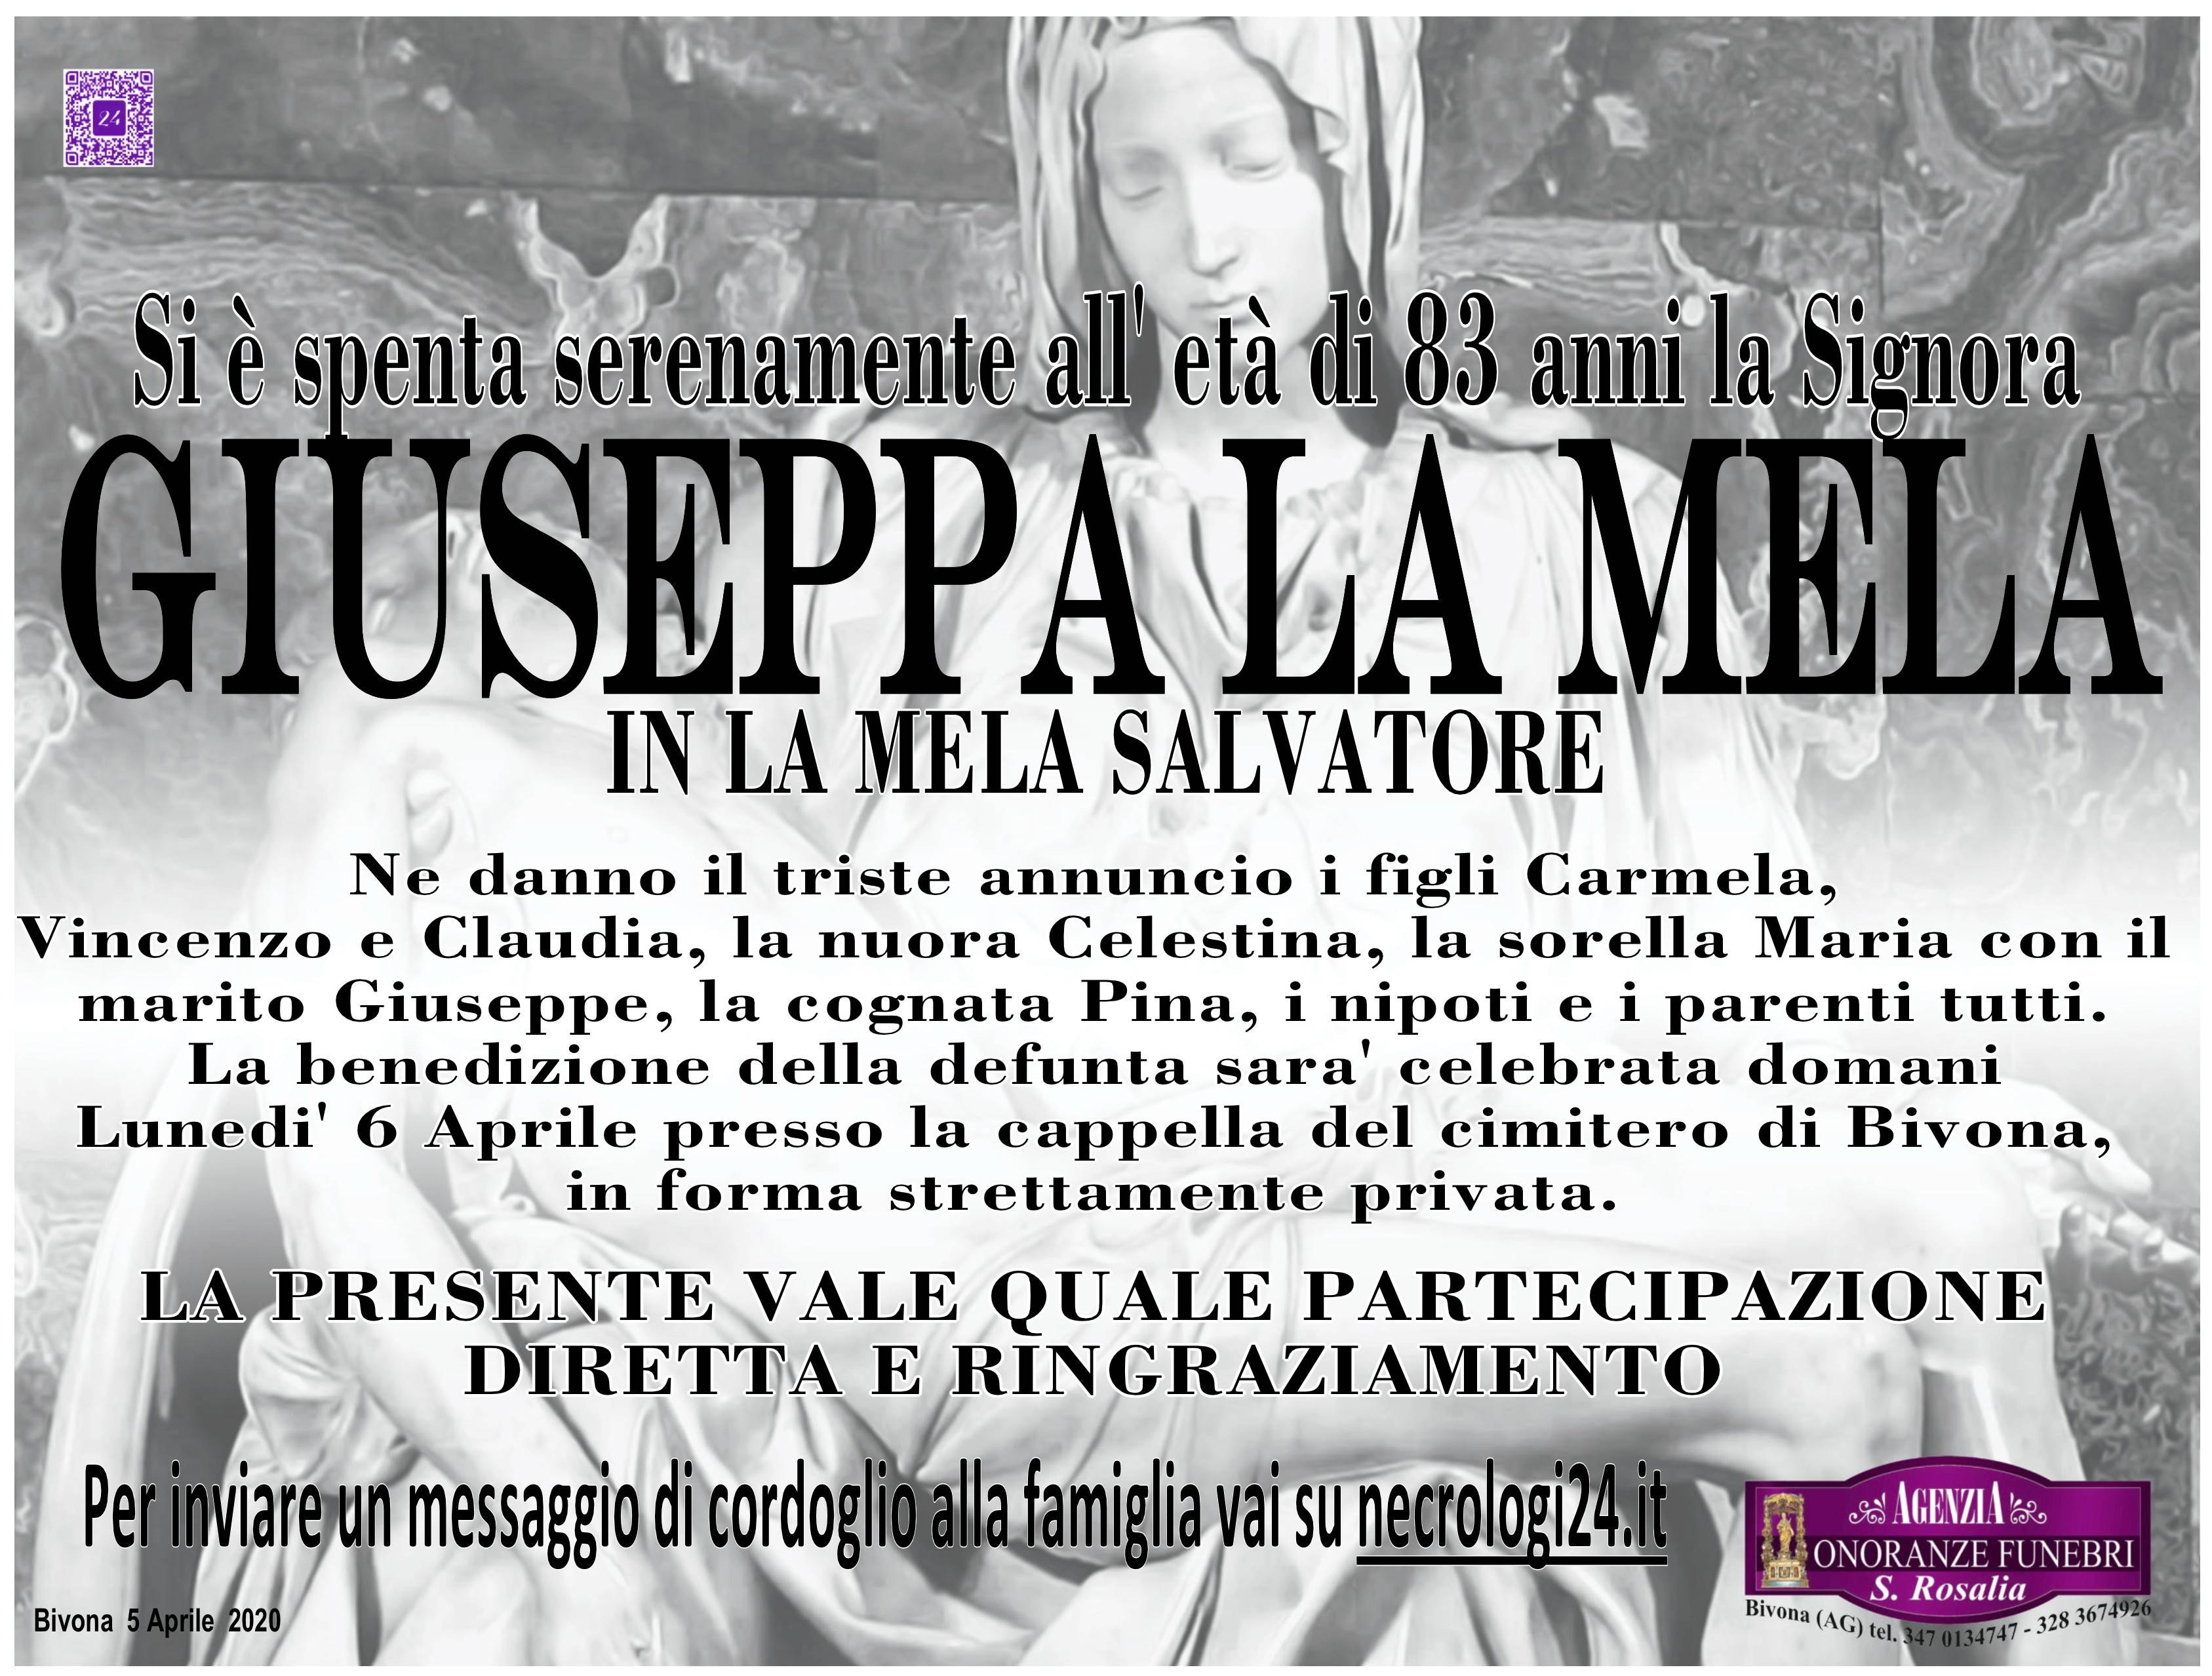 Giuseppa La Mela